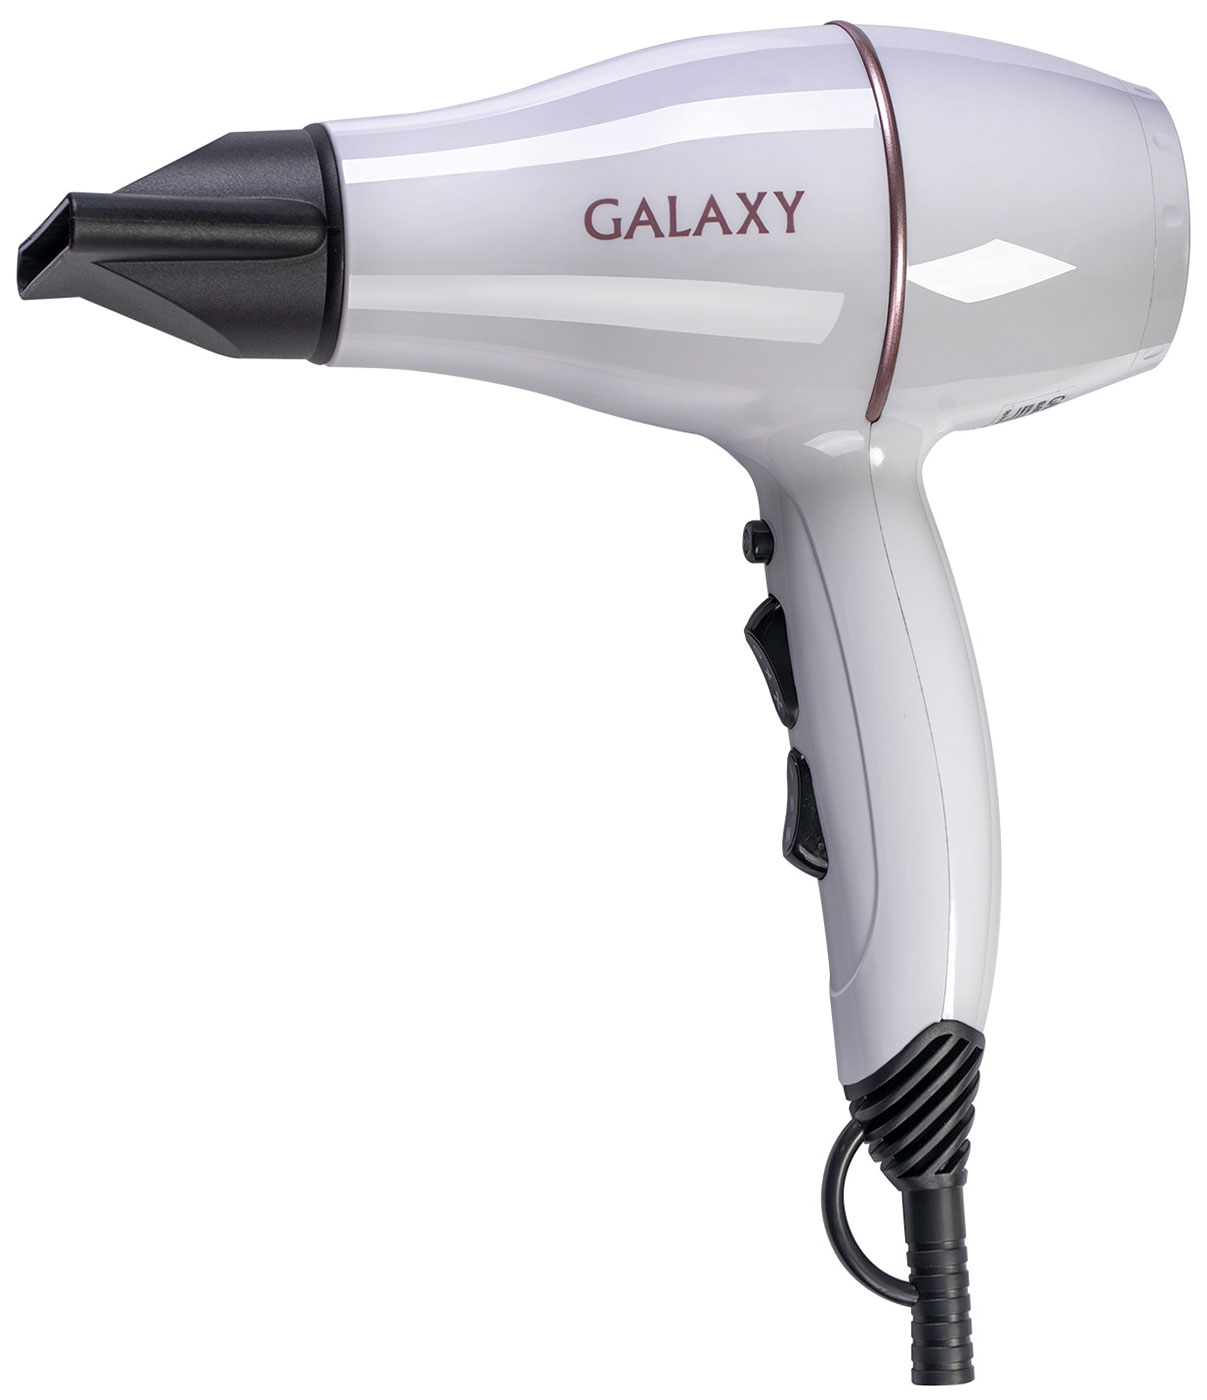 Фен Galaxy GL4302 цена и фото